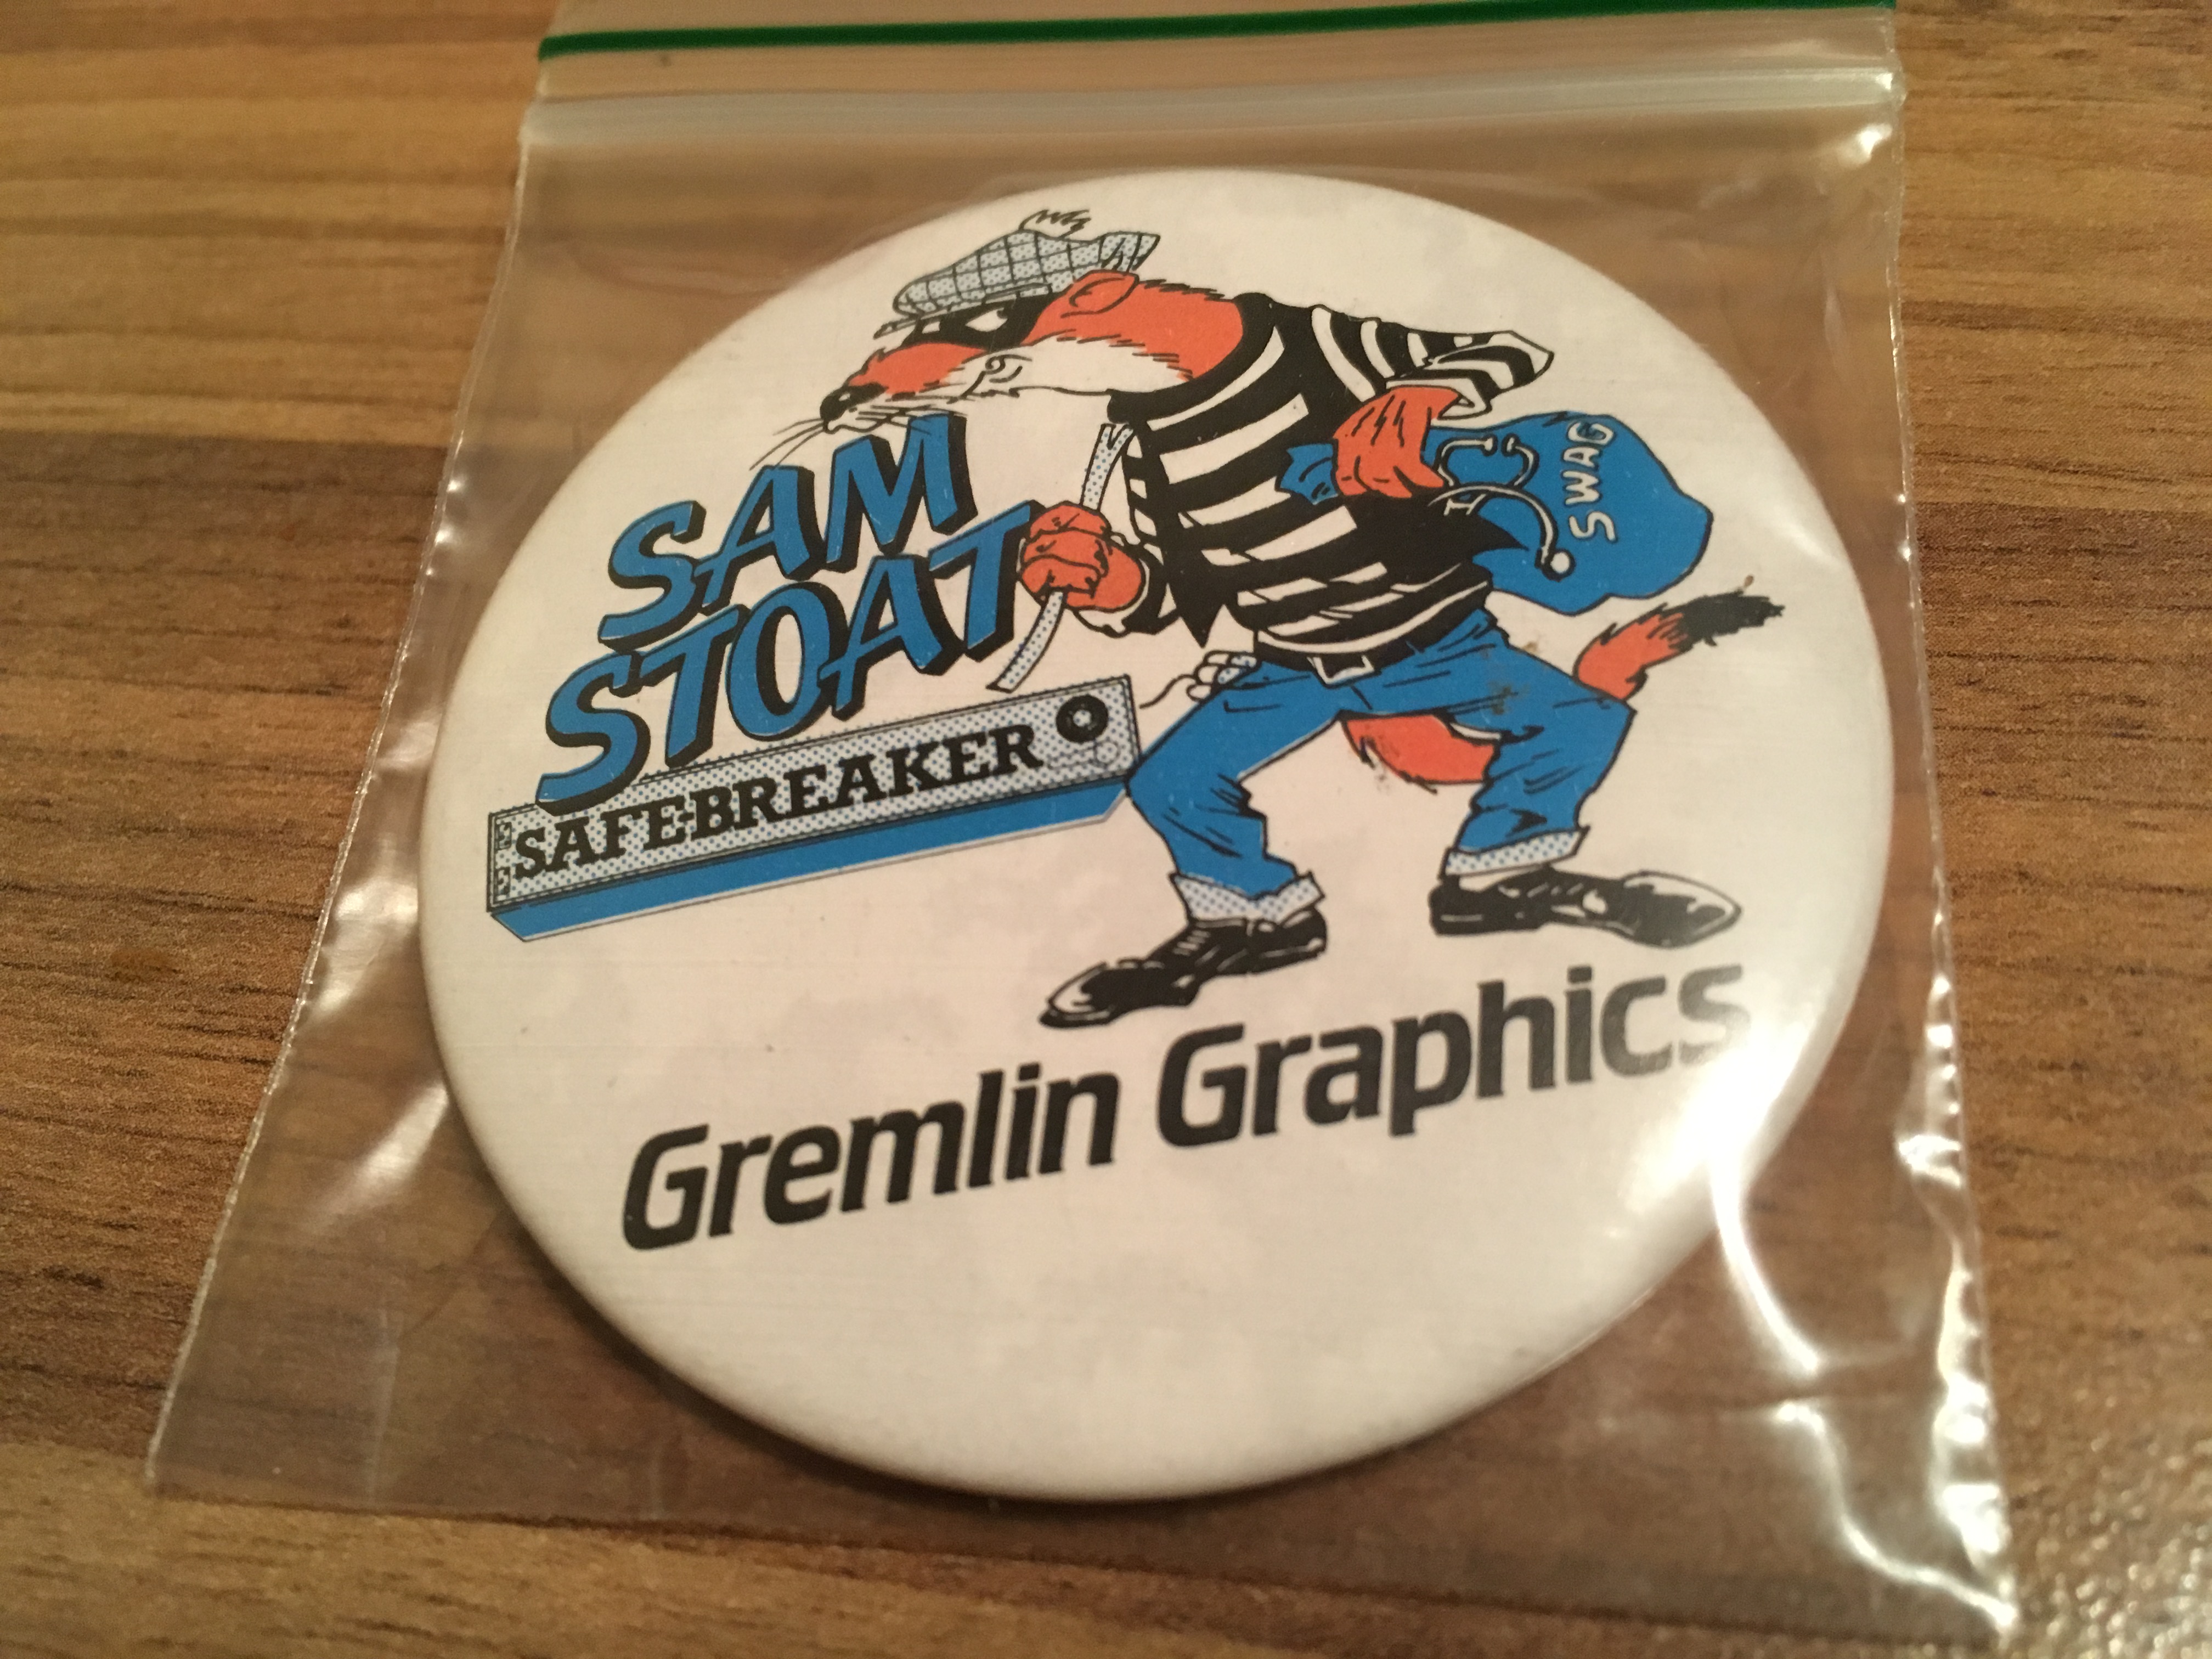 Sam Stoat Safebreaker Vintage Badge